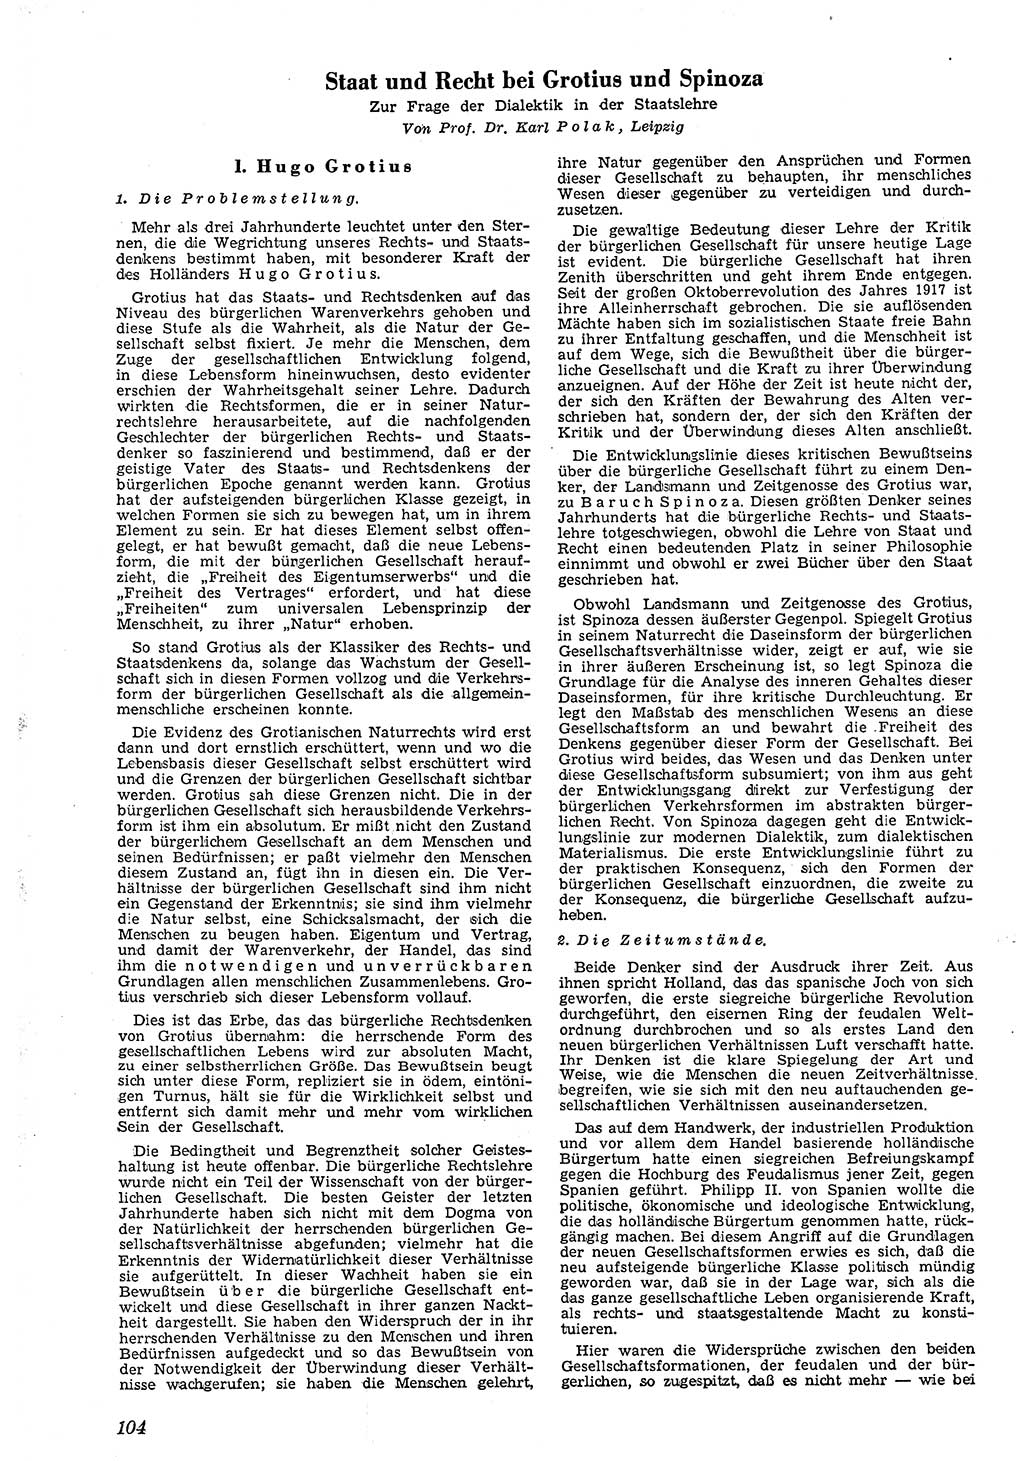 Neue Justiz (NJ), Zeitschrift für Recht und Rechtswissenschaft [Deutsche Demokratische Republik (DDR)], 4. Jahrgang 1950, Seite 104 (NJ DDR 1950, S. 104)